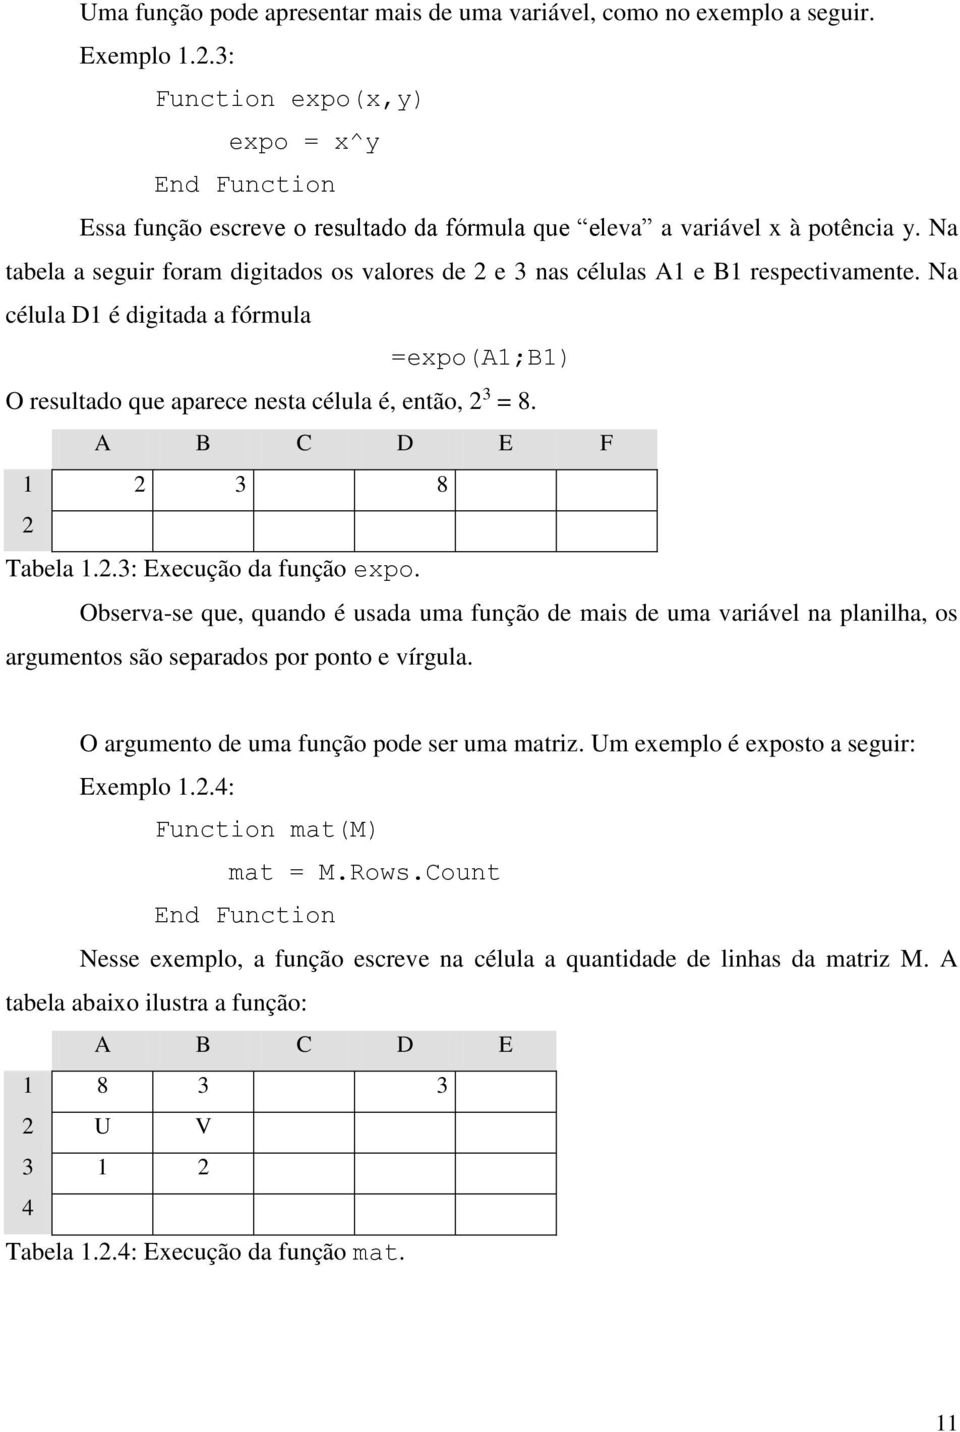 A B C D E F 1 2 3 8 2 Tabela 1.2.3: Execução da função expo. Observa-se que, quando é usada uma função de mais de uma variável na planilha, os argumentos são separados por ponto e vírgula.